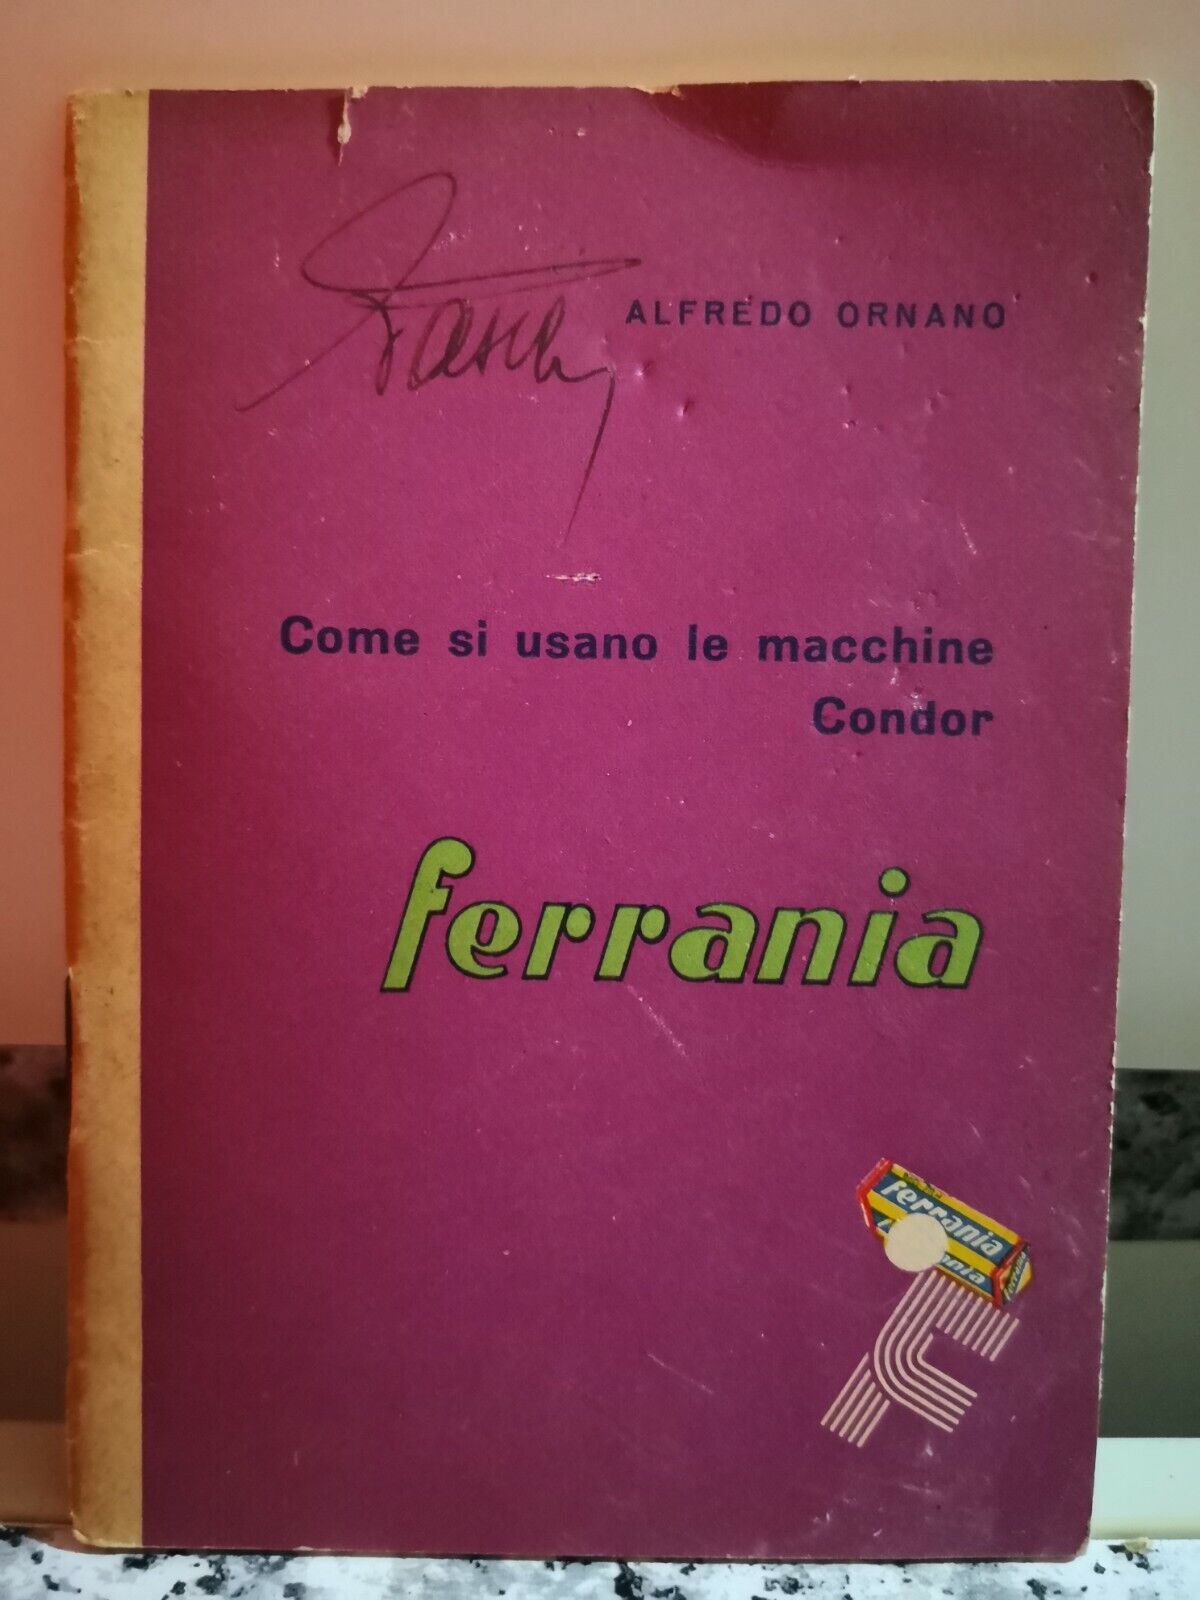 Come si usano le macchine Condor ( Ferraria ) di Alfredo Ornano,  1954,  Saes-F